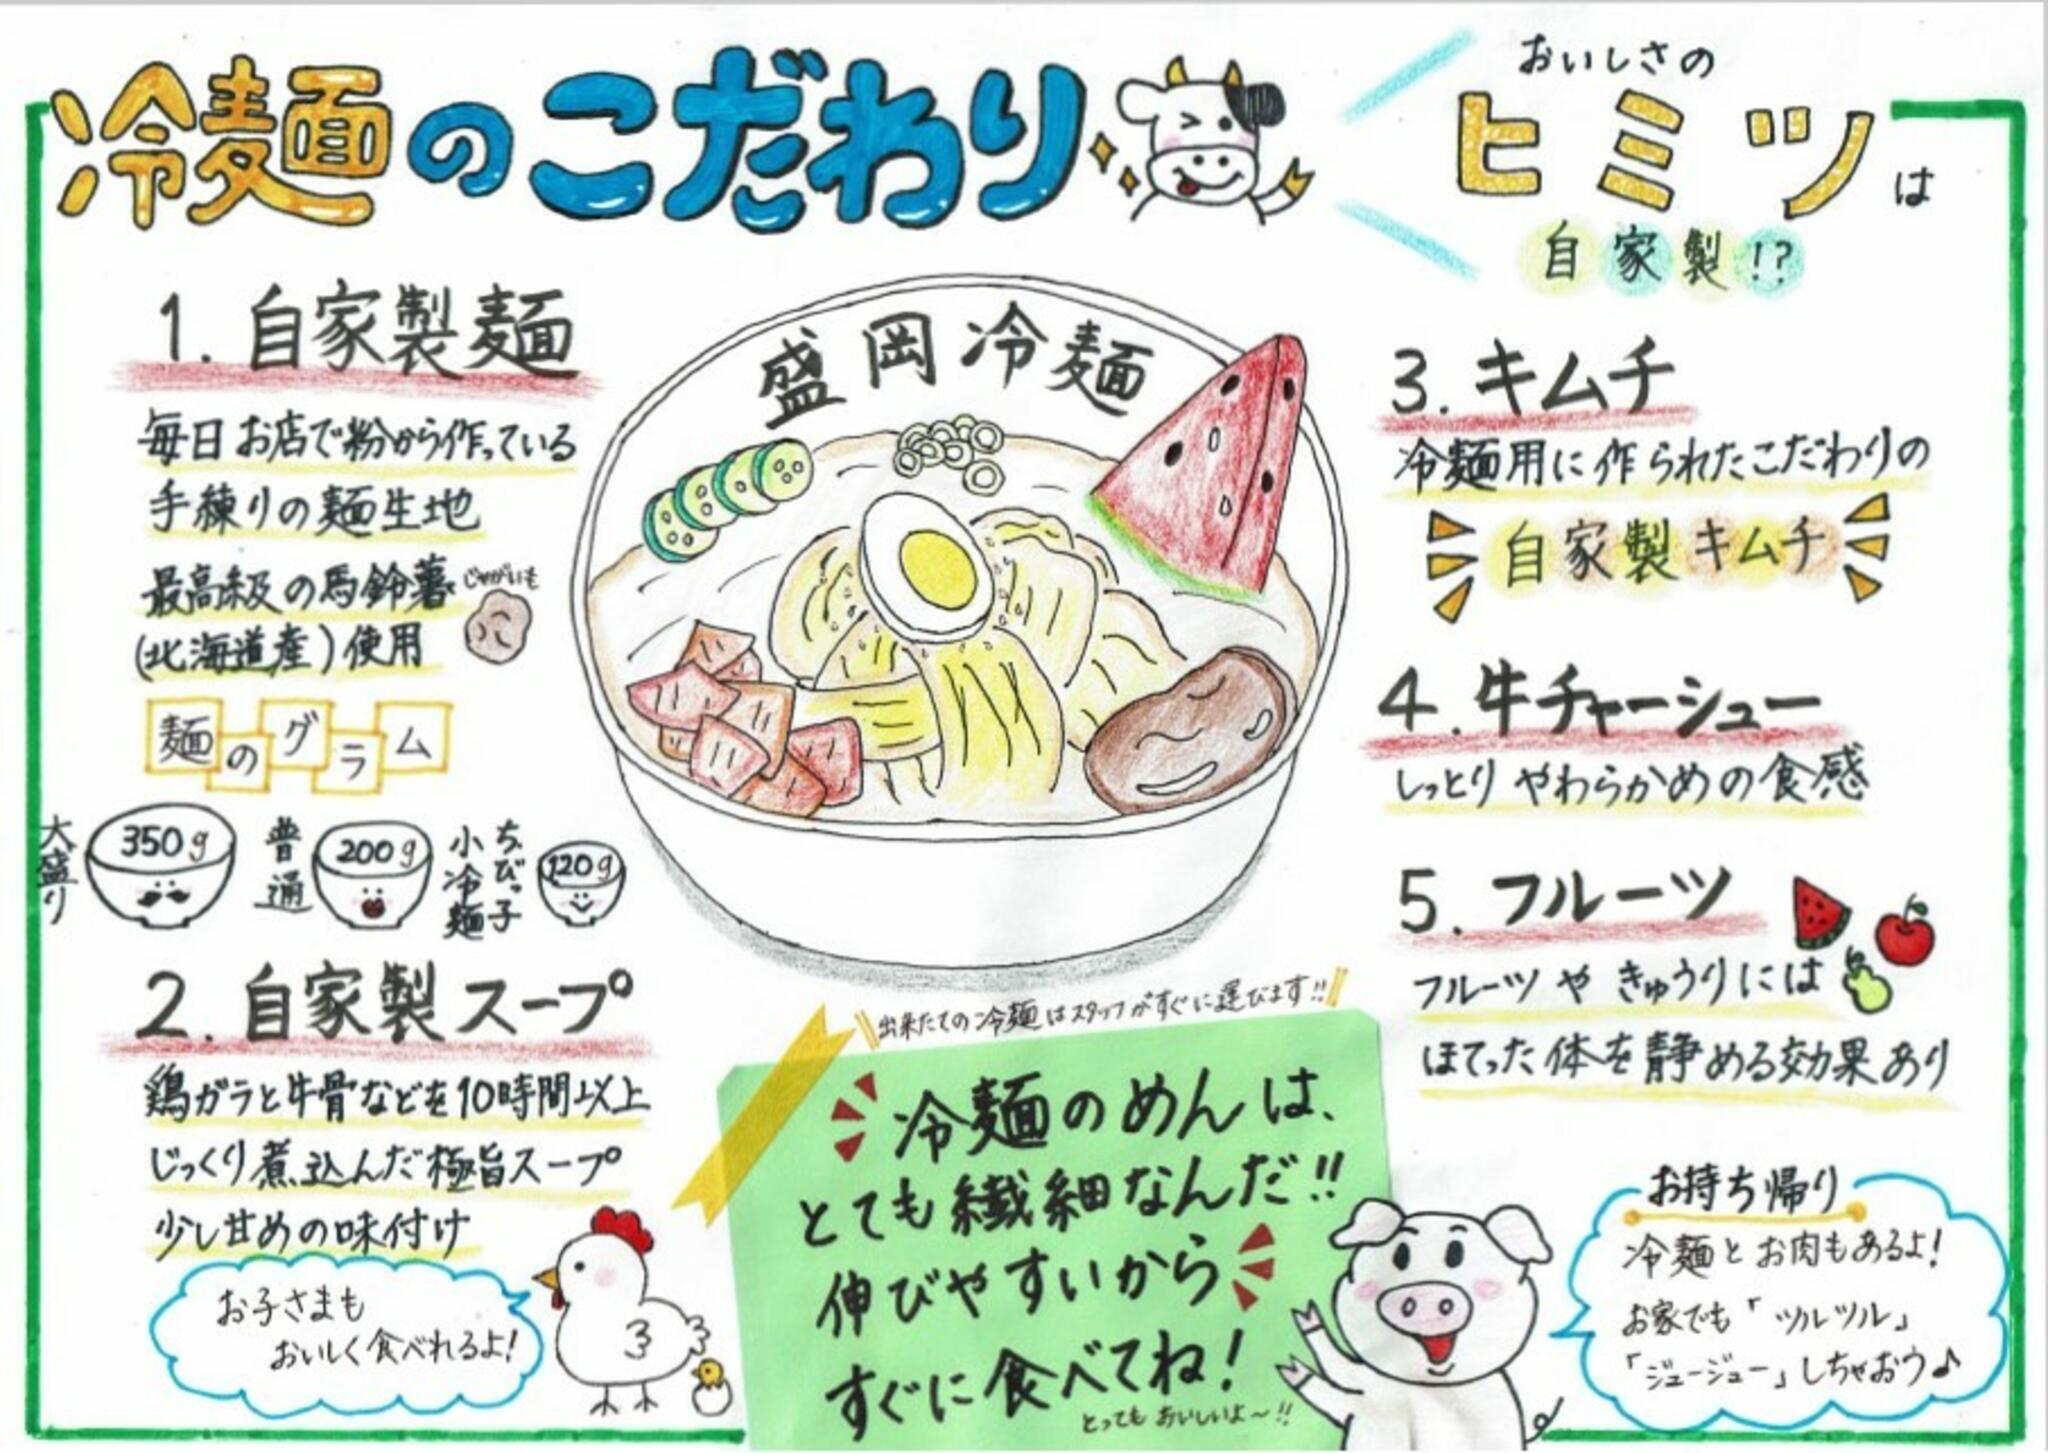 焼肉冷麺やまなか家 上田バイパス店からのお知らせ(盛岡冷麵のこだわり)に関する写真